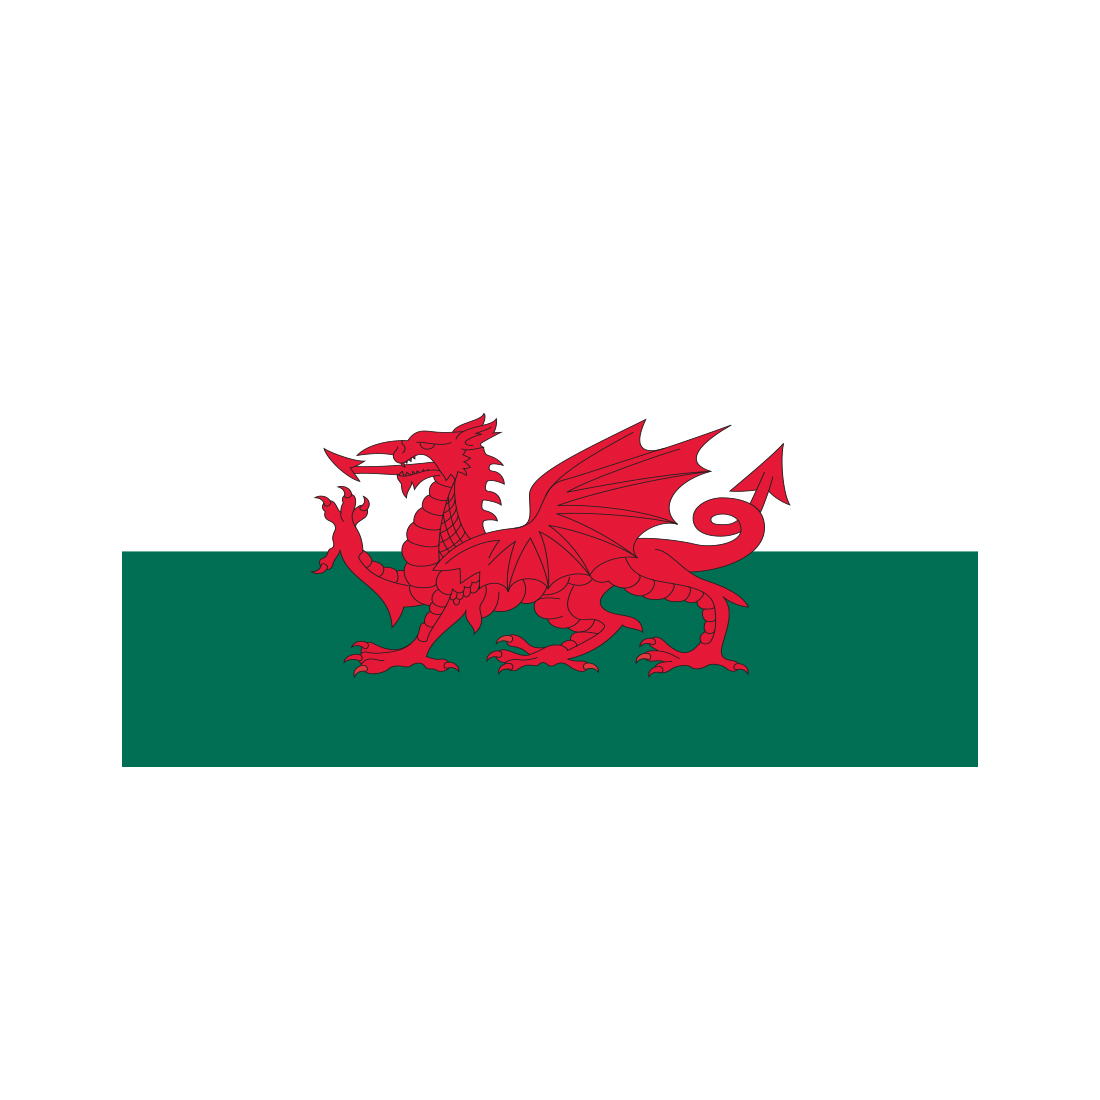 Welsh Cymru flag